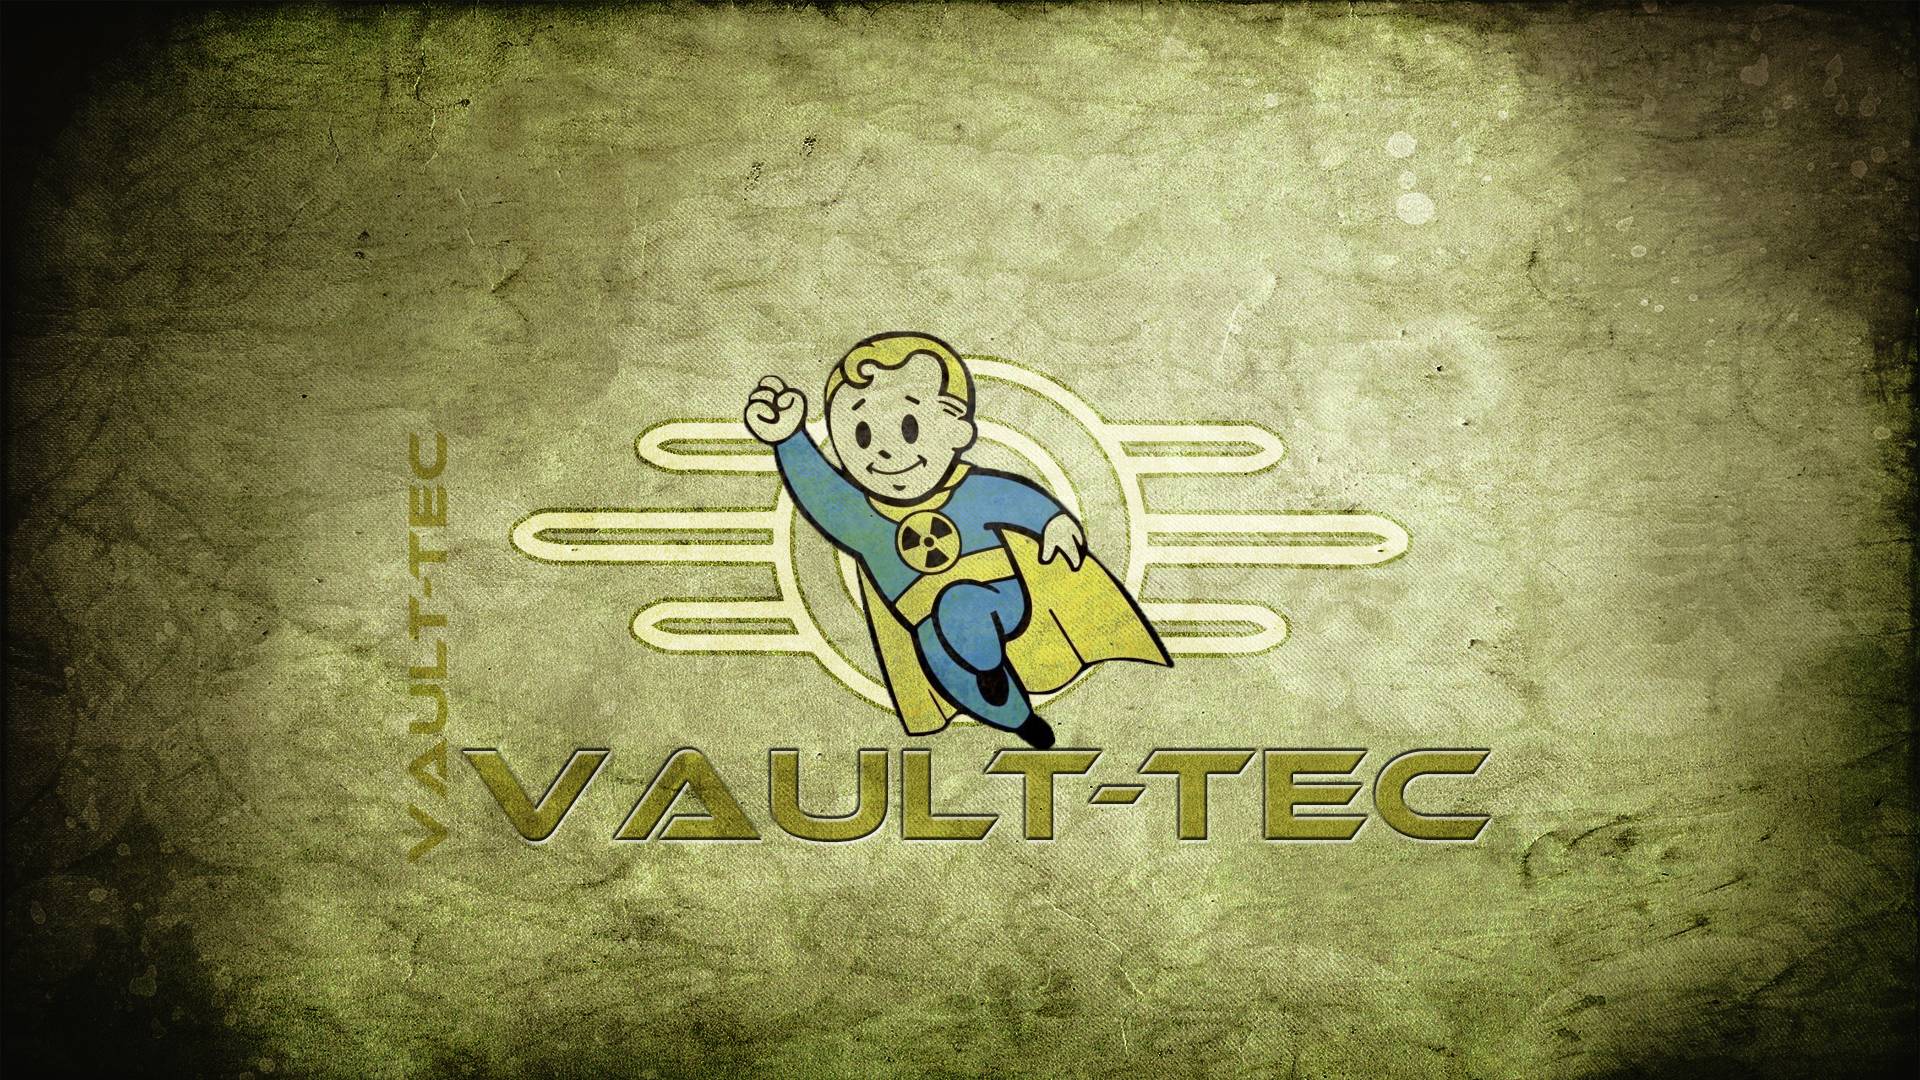 Vault-tec Wallpaper - Fallout , HD Wallpaper & Backgrounds